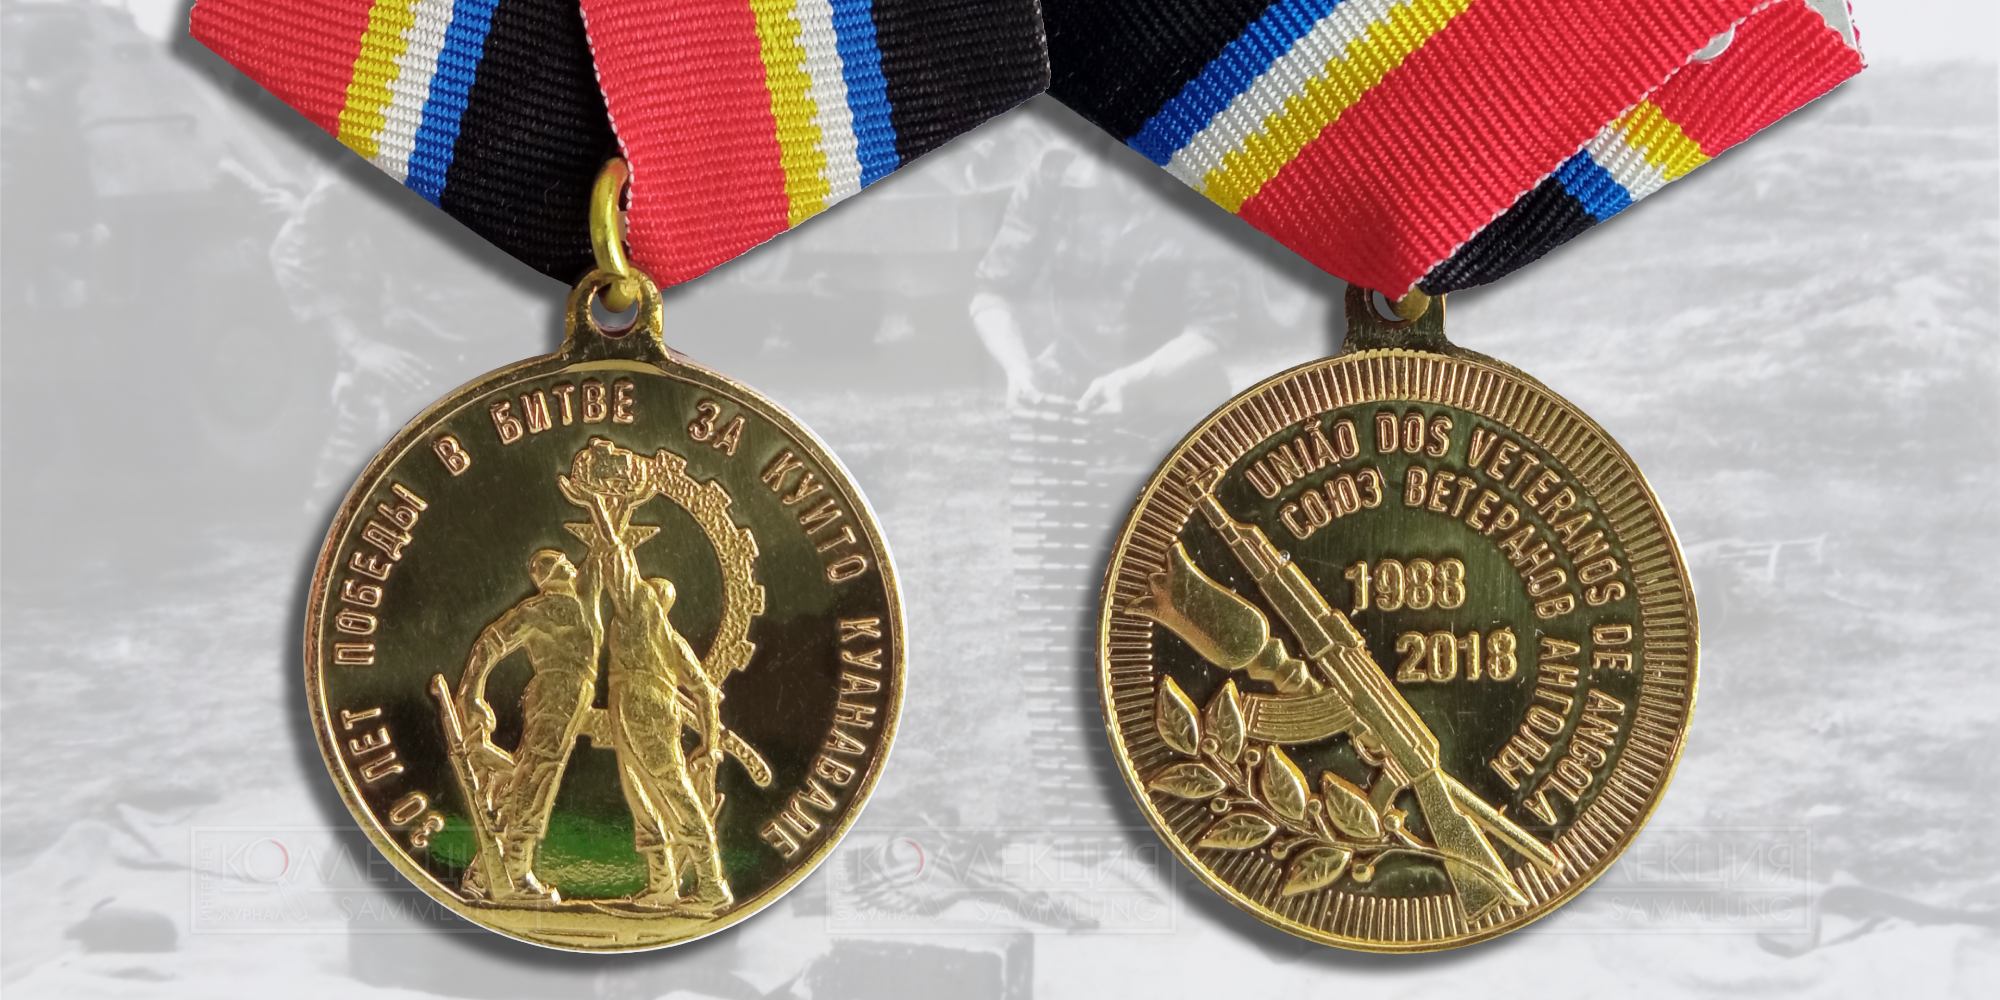 Памятная юбилейная медаль «30 лет Победы в битве за Куито Куанавале». Союз ветеранов Анголы. 2018